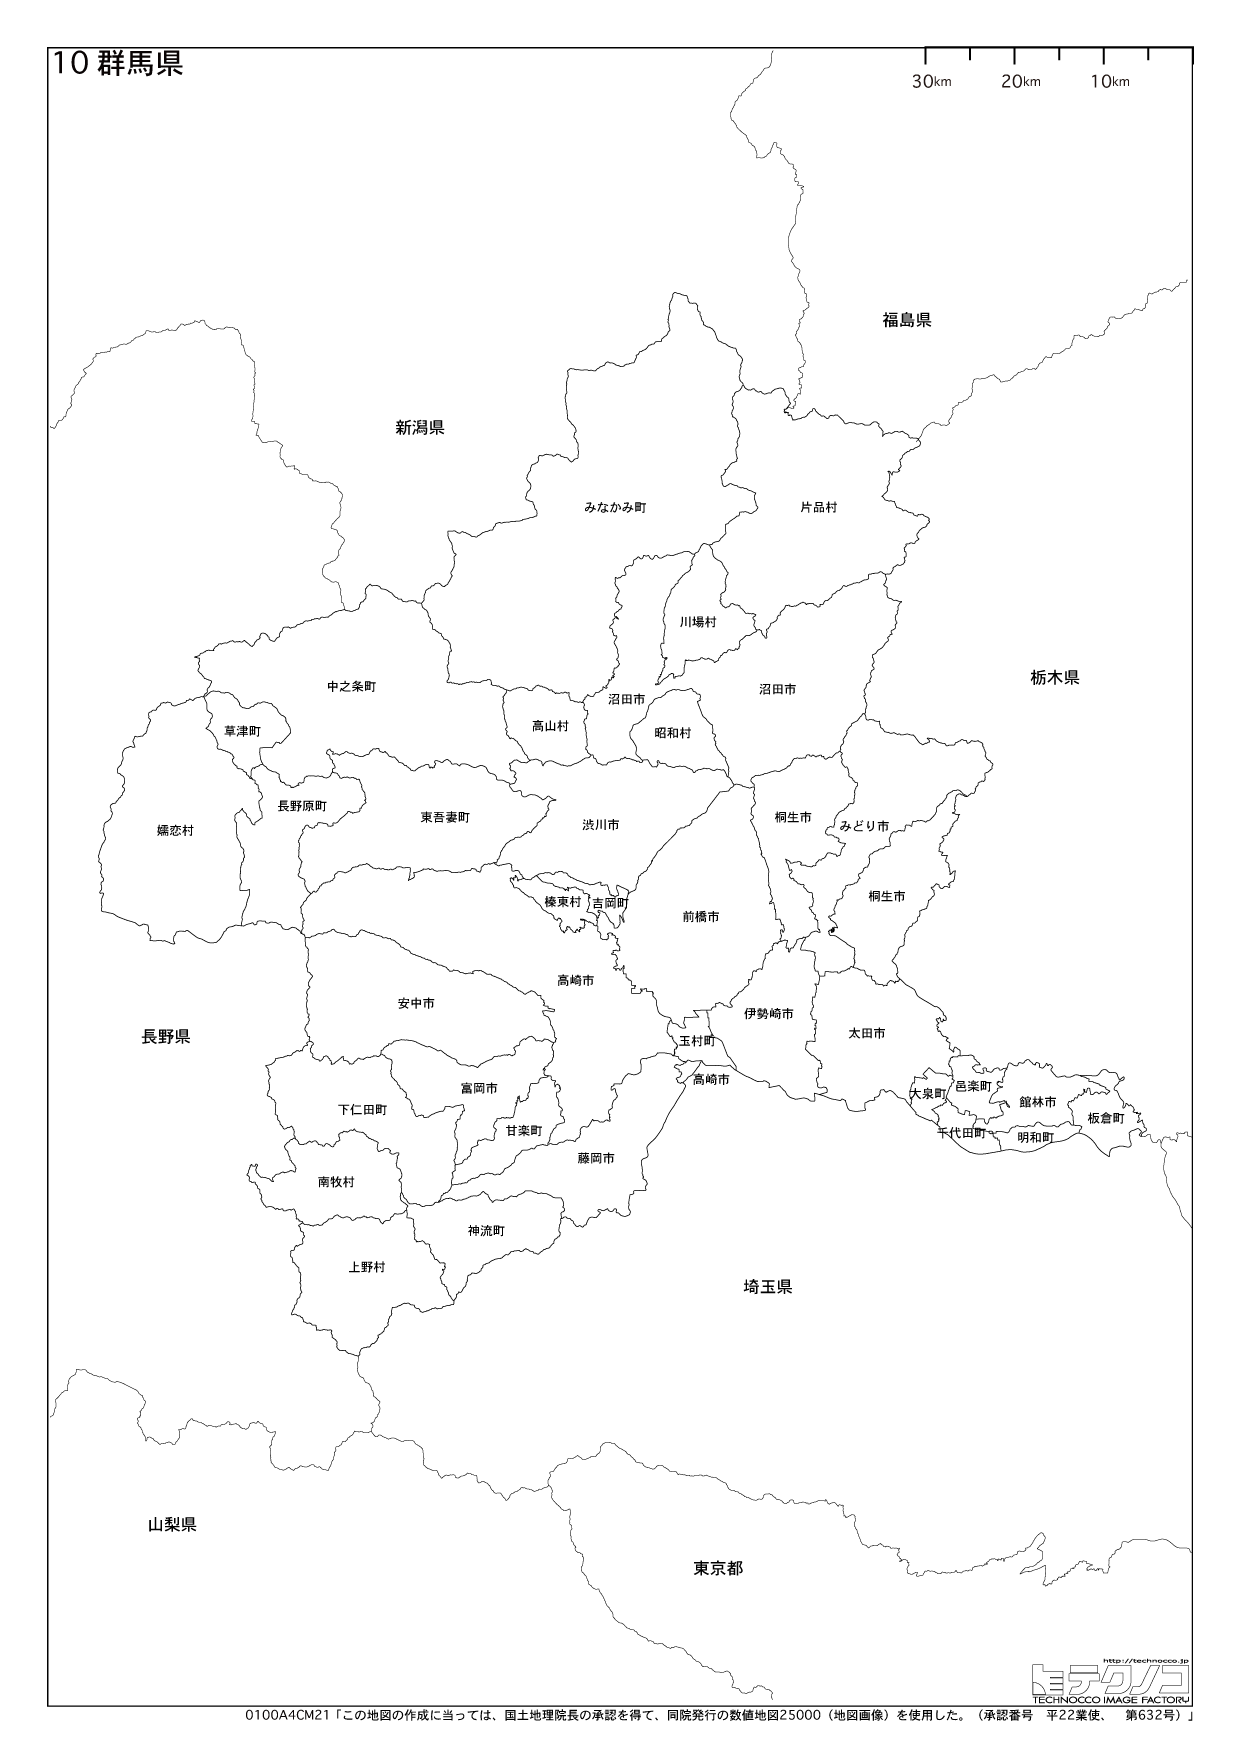 群馬県の白地図と市町村の合併情報